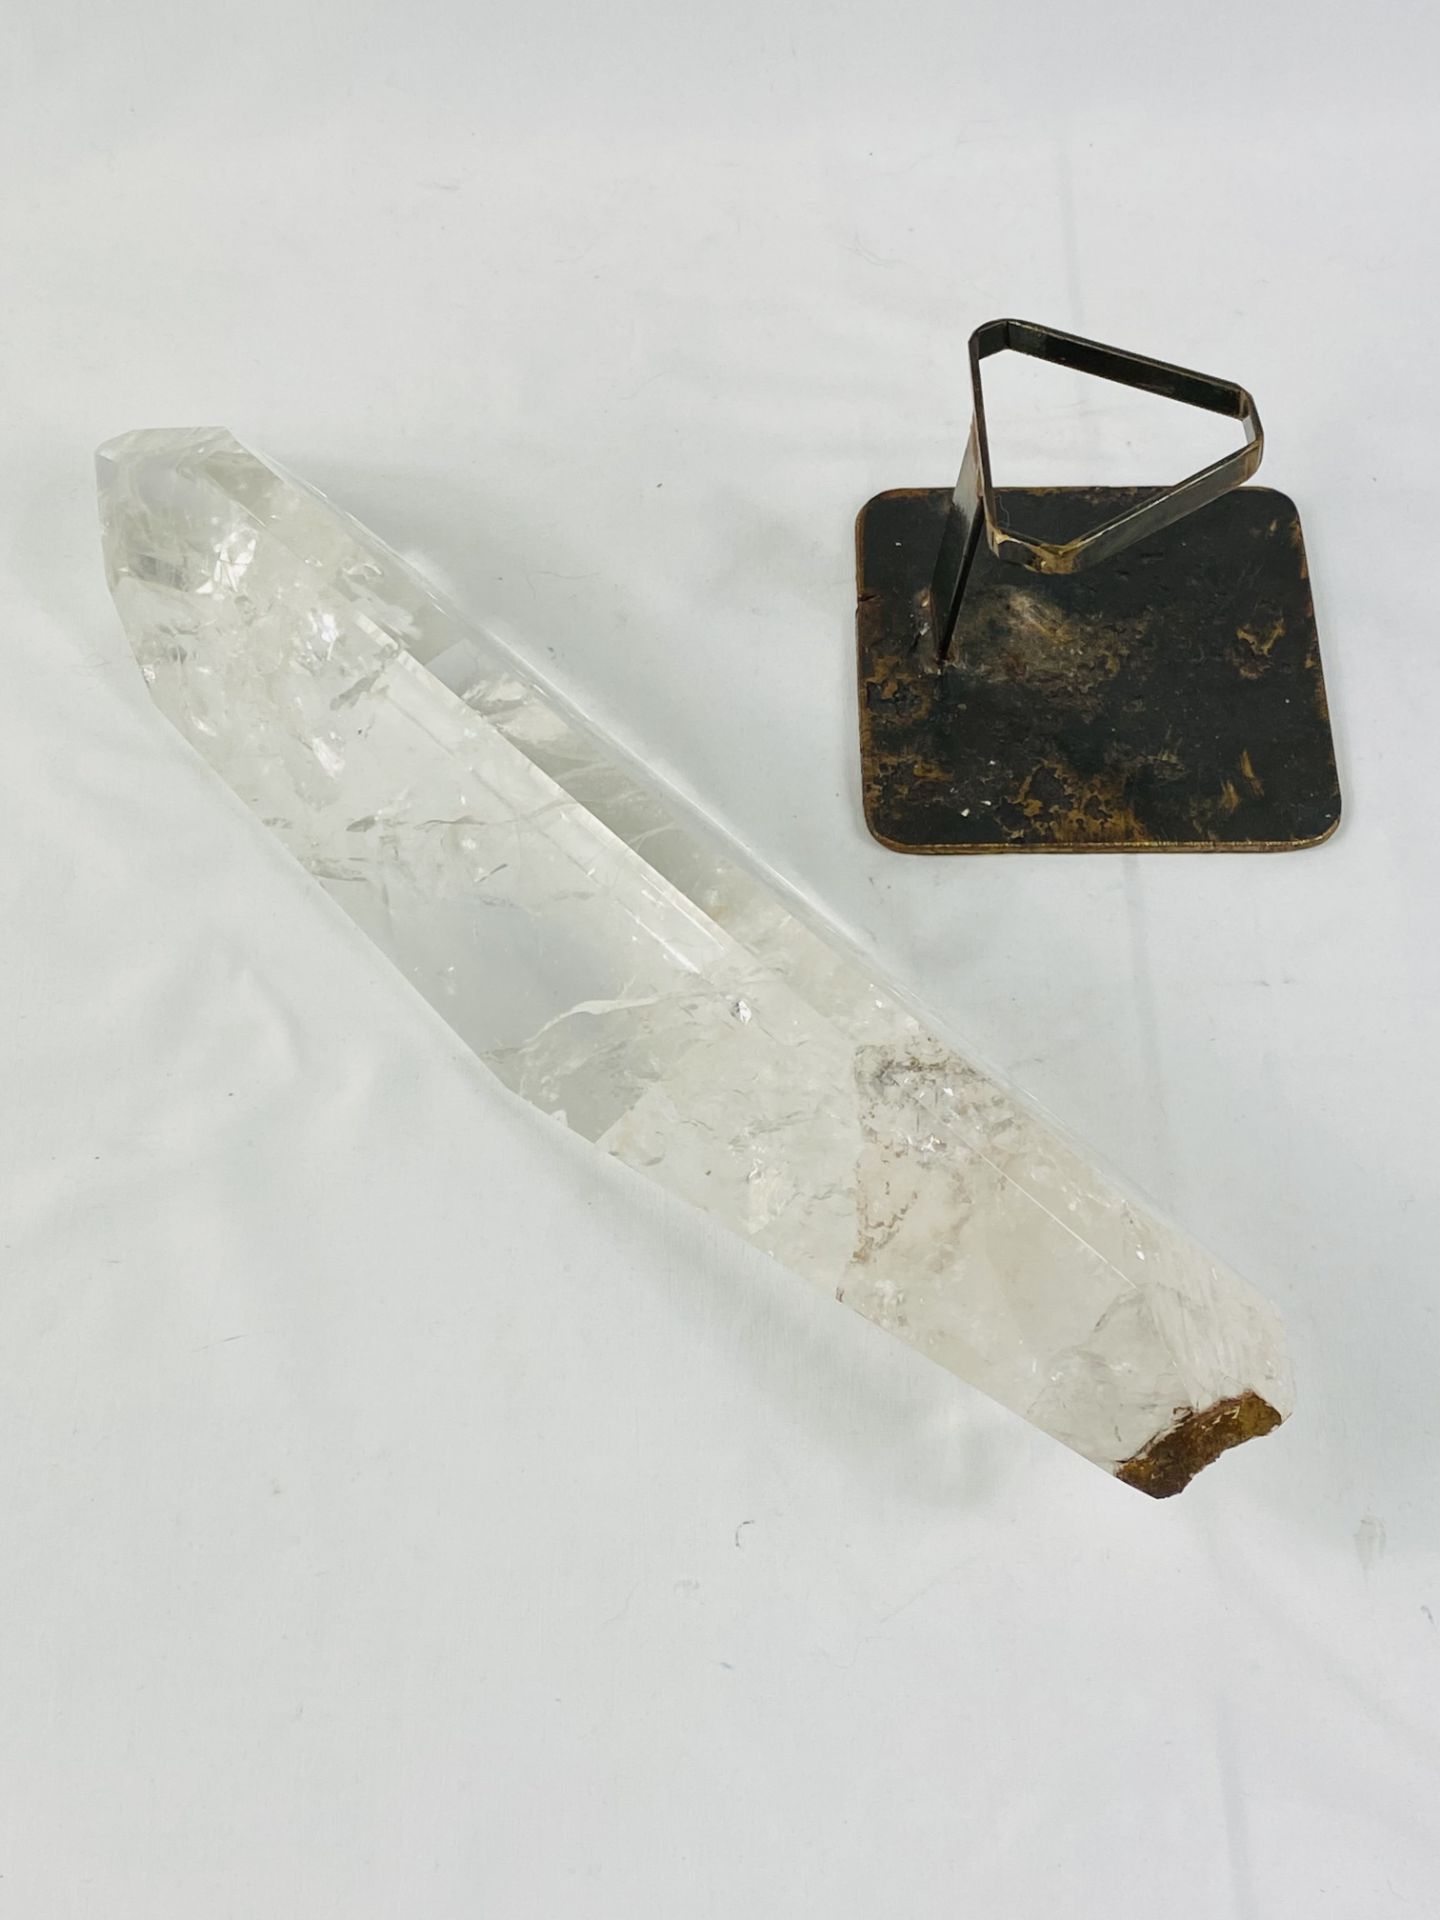 Polished rock crystal mounted in metal base - Bild 5 aus 6